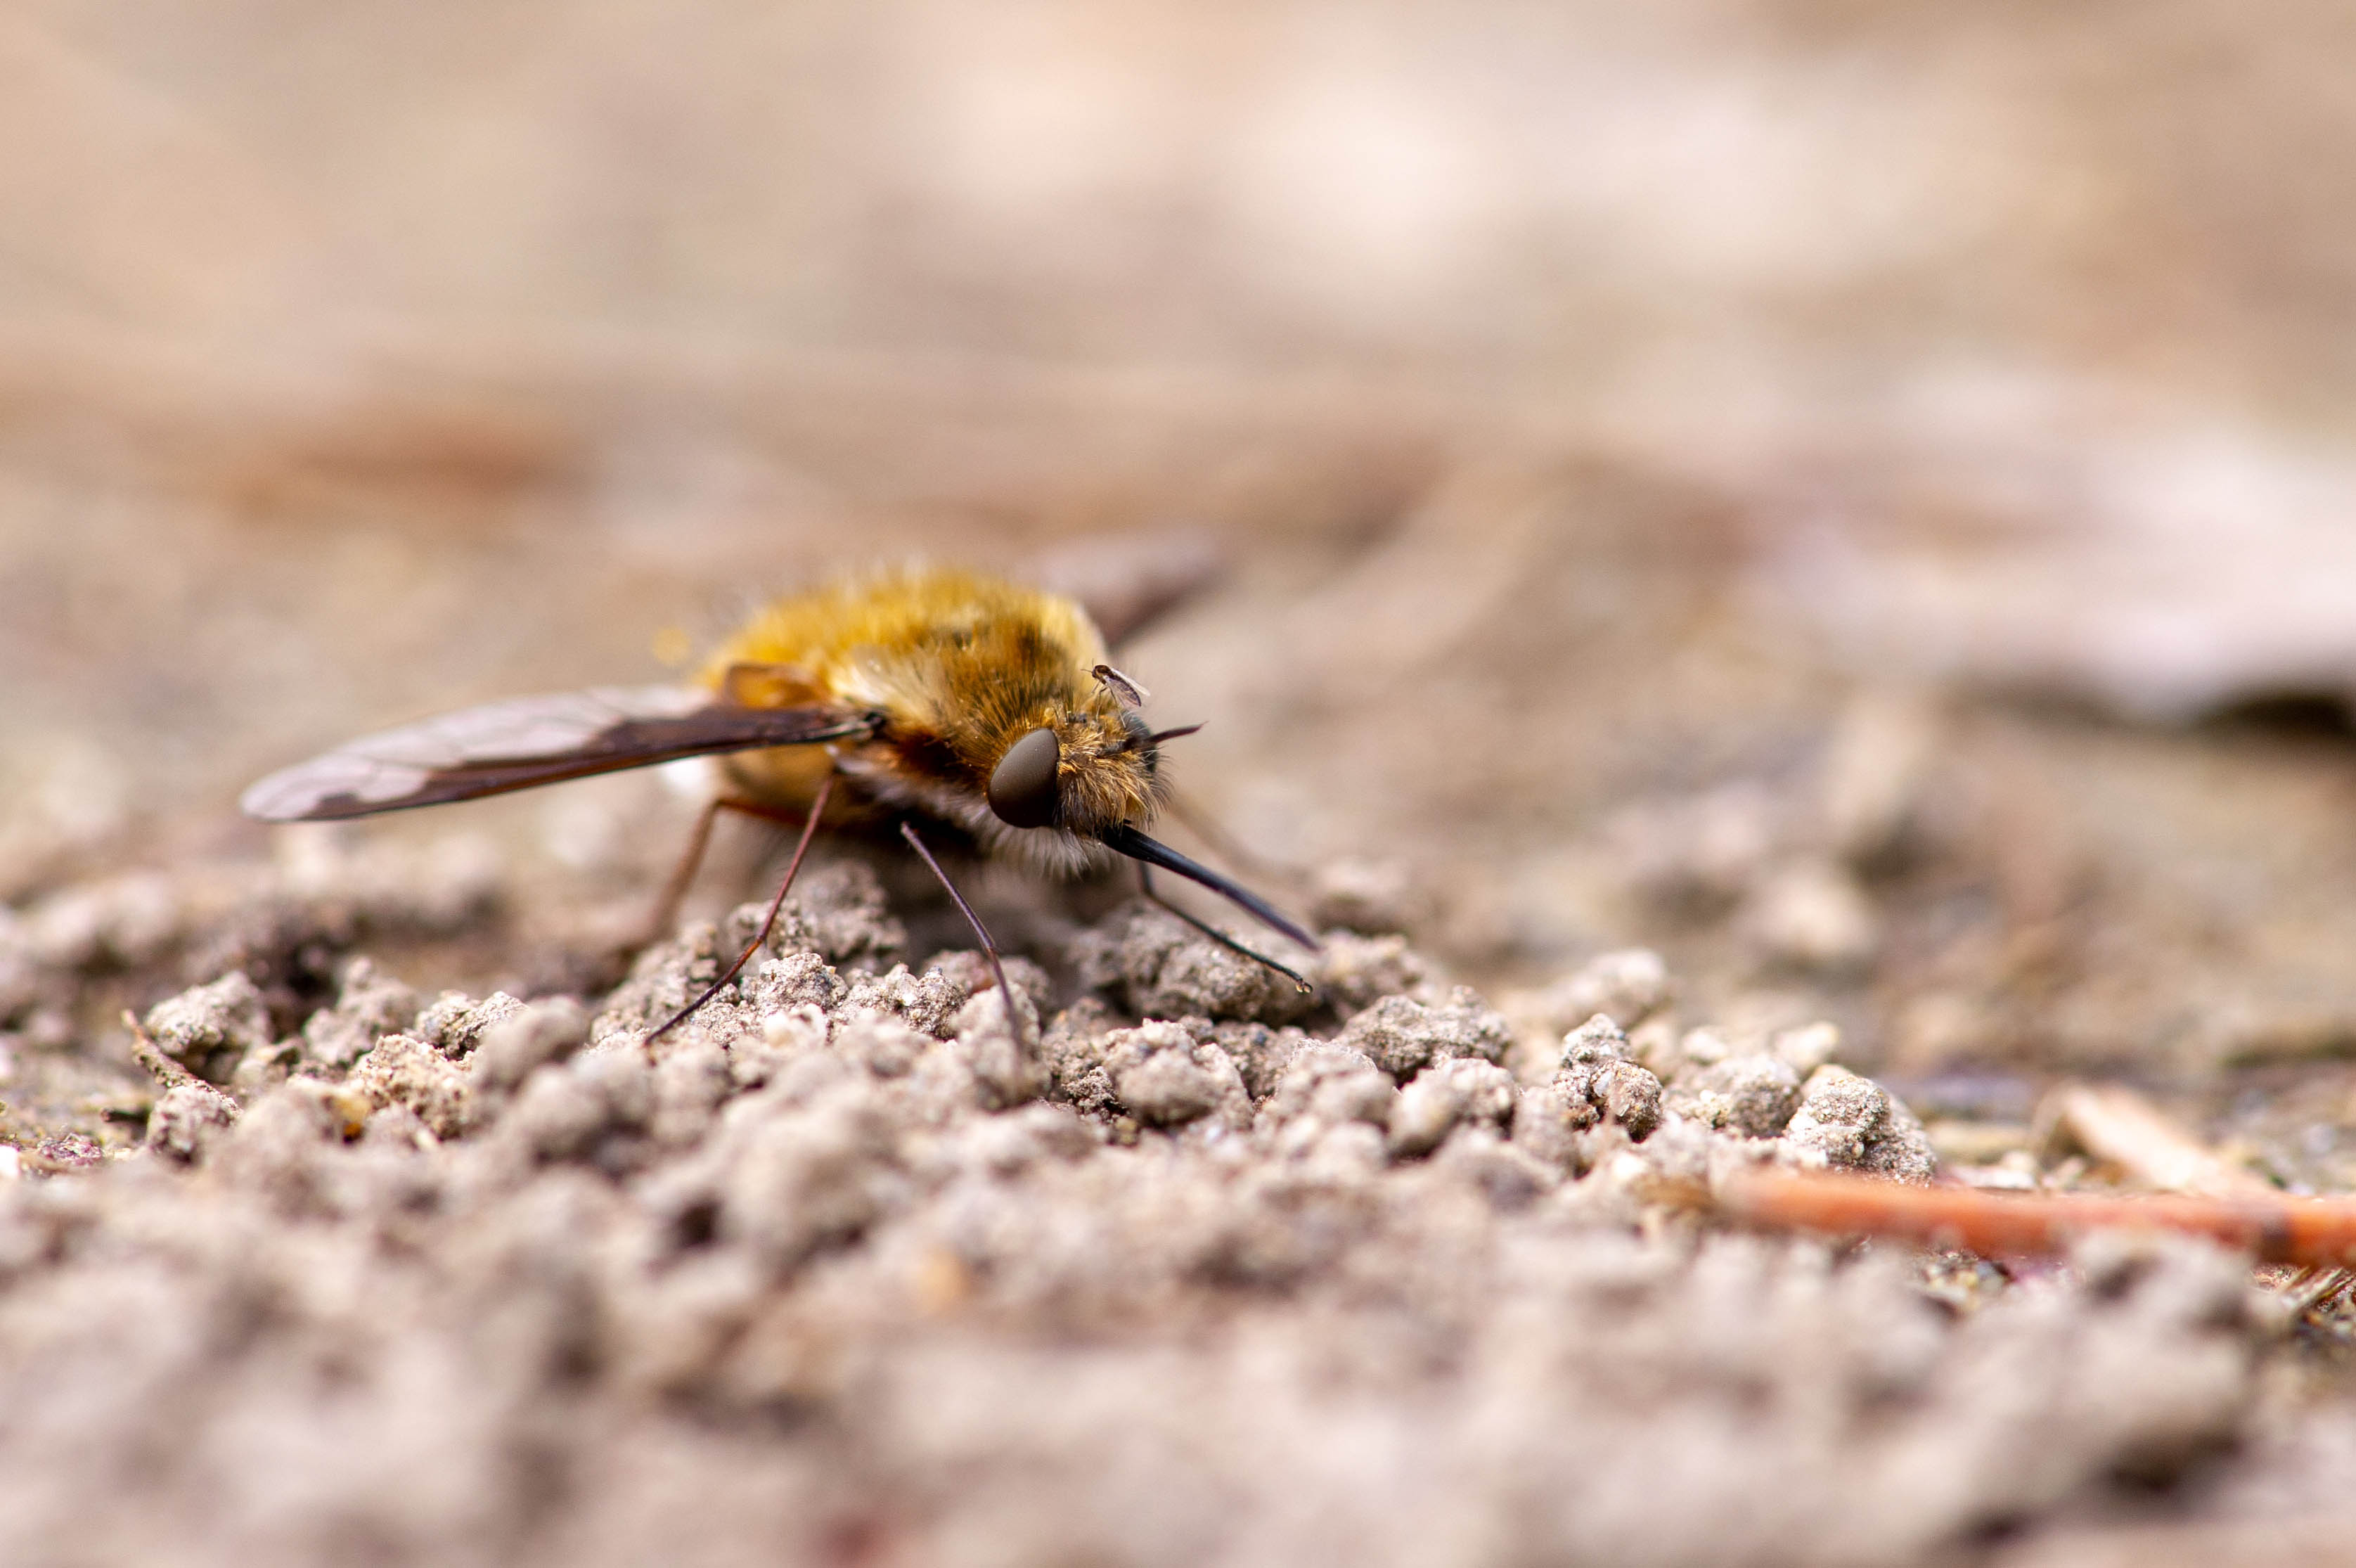 ビロウドツリアブ ビロードツリアブ 虫の写真と生態なら昆虫写真図鑑 ムシミル